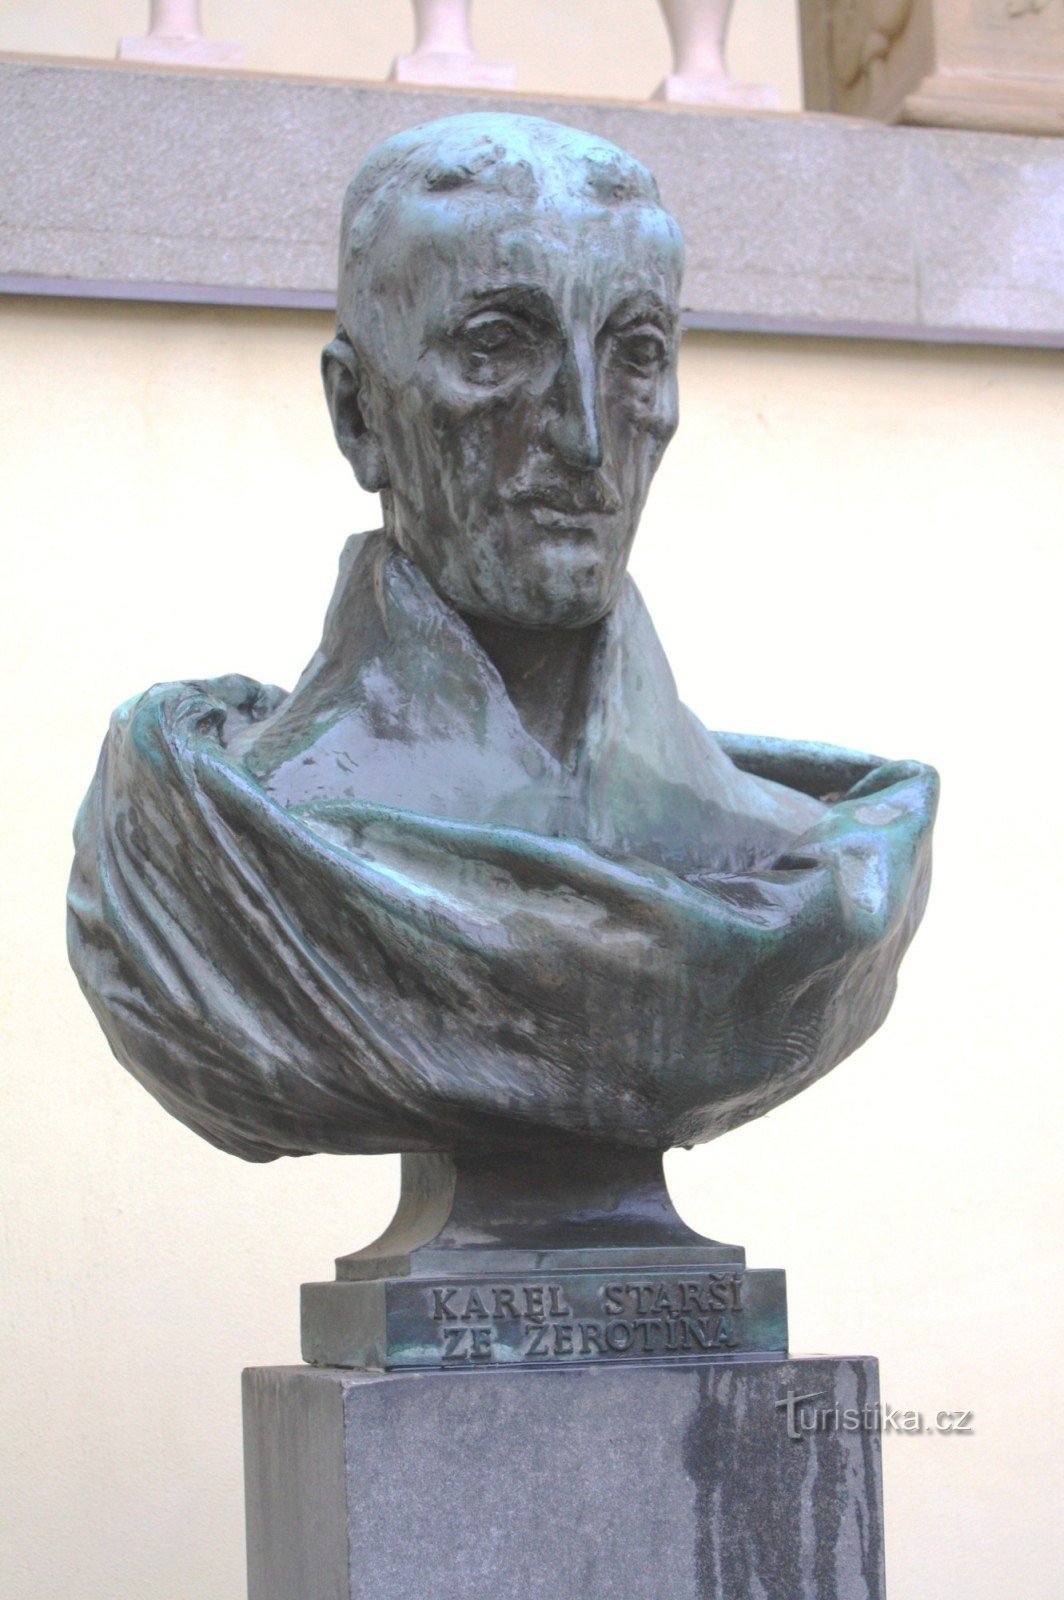 Brno - bust of Karel Starší from Žerotín